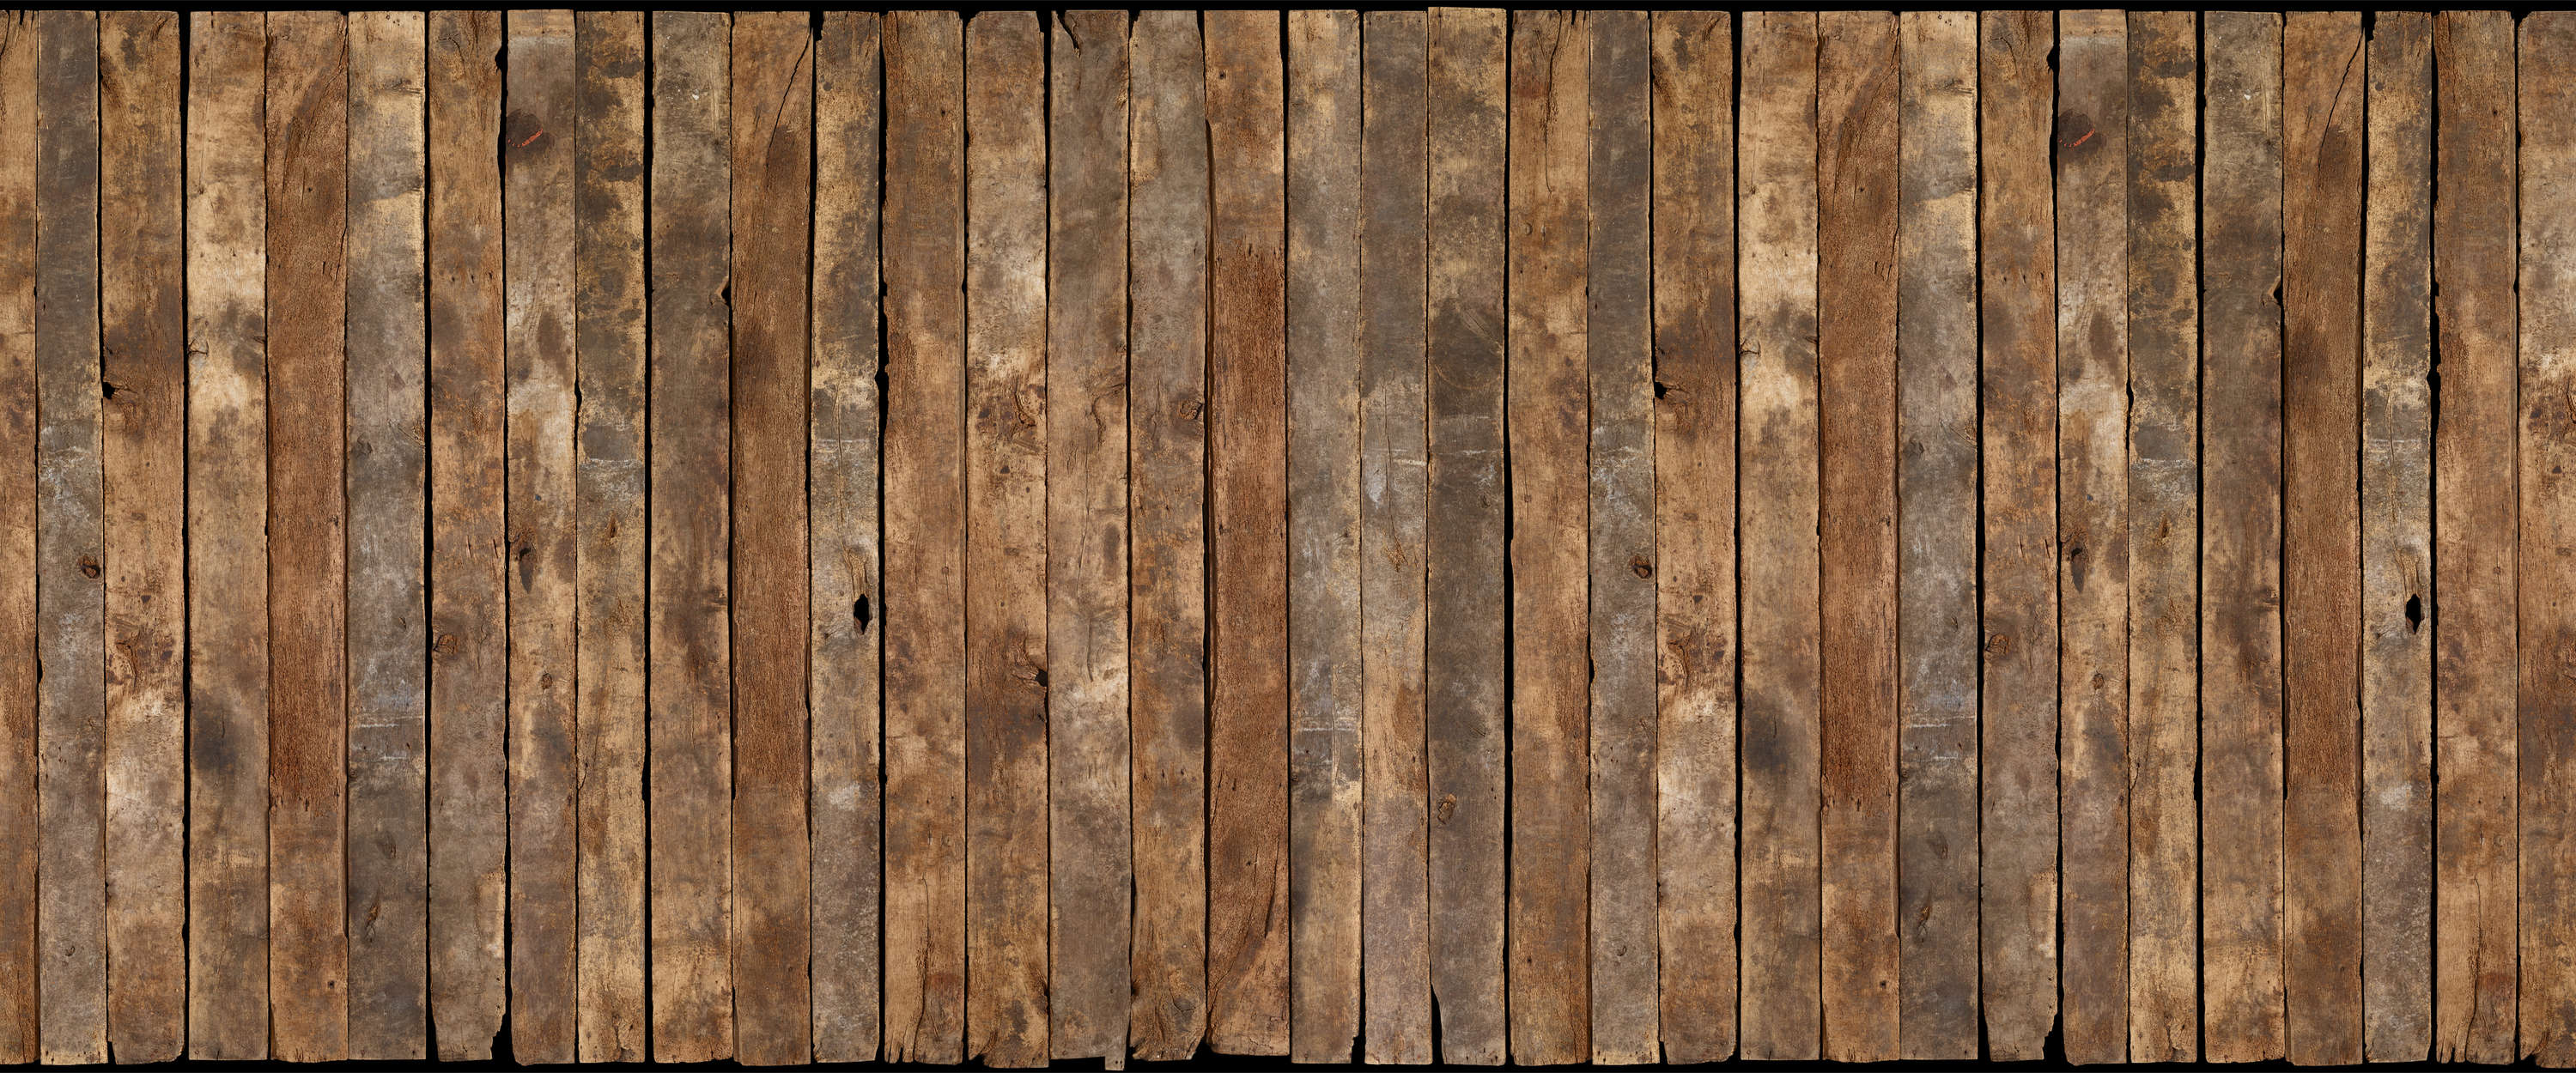             Papier peint effet bois aspect usé poutres rustiques
        